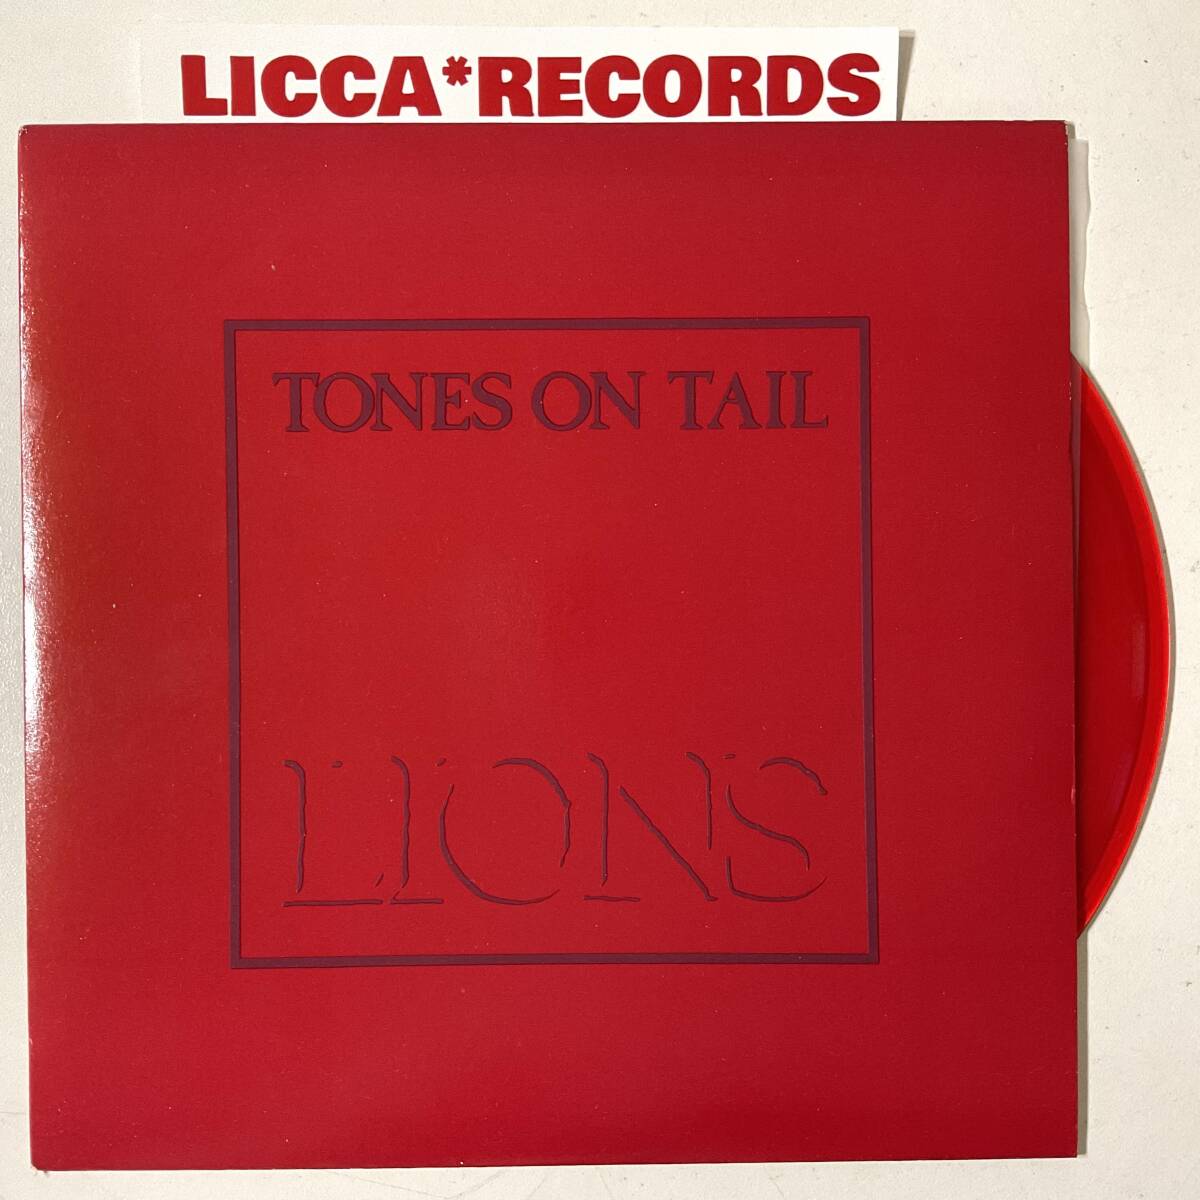 MEGA RARE LIMITED RED VINYL Tones On Tail - Lions / Go! UK 1984 ORIGINAL Bauhaus Daniel Ash *7“ EPレコード LICCA*RECORDS 142 美盤_画像1